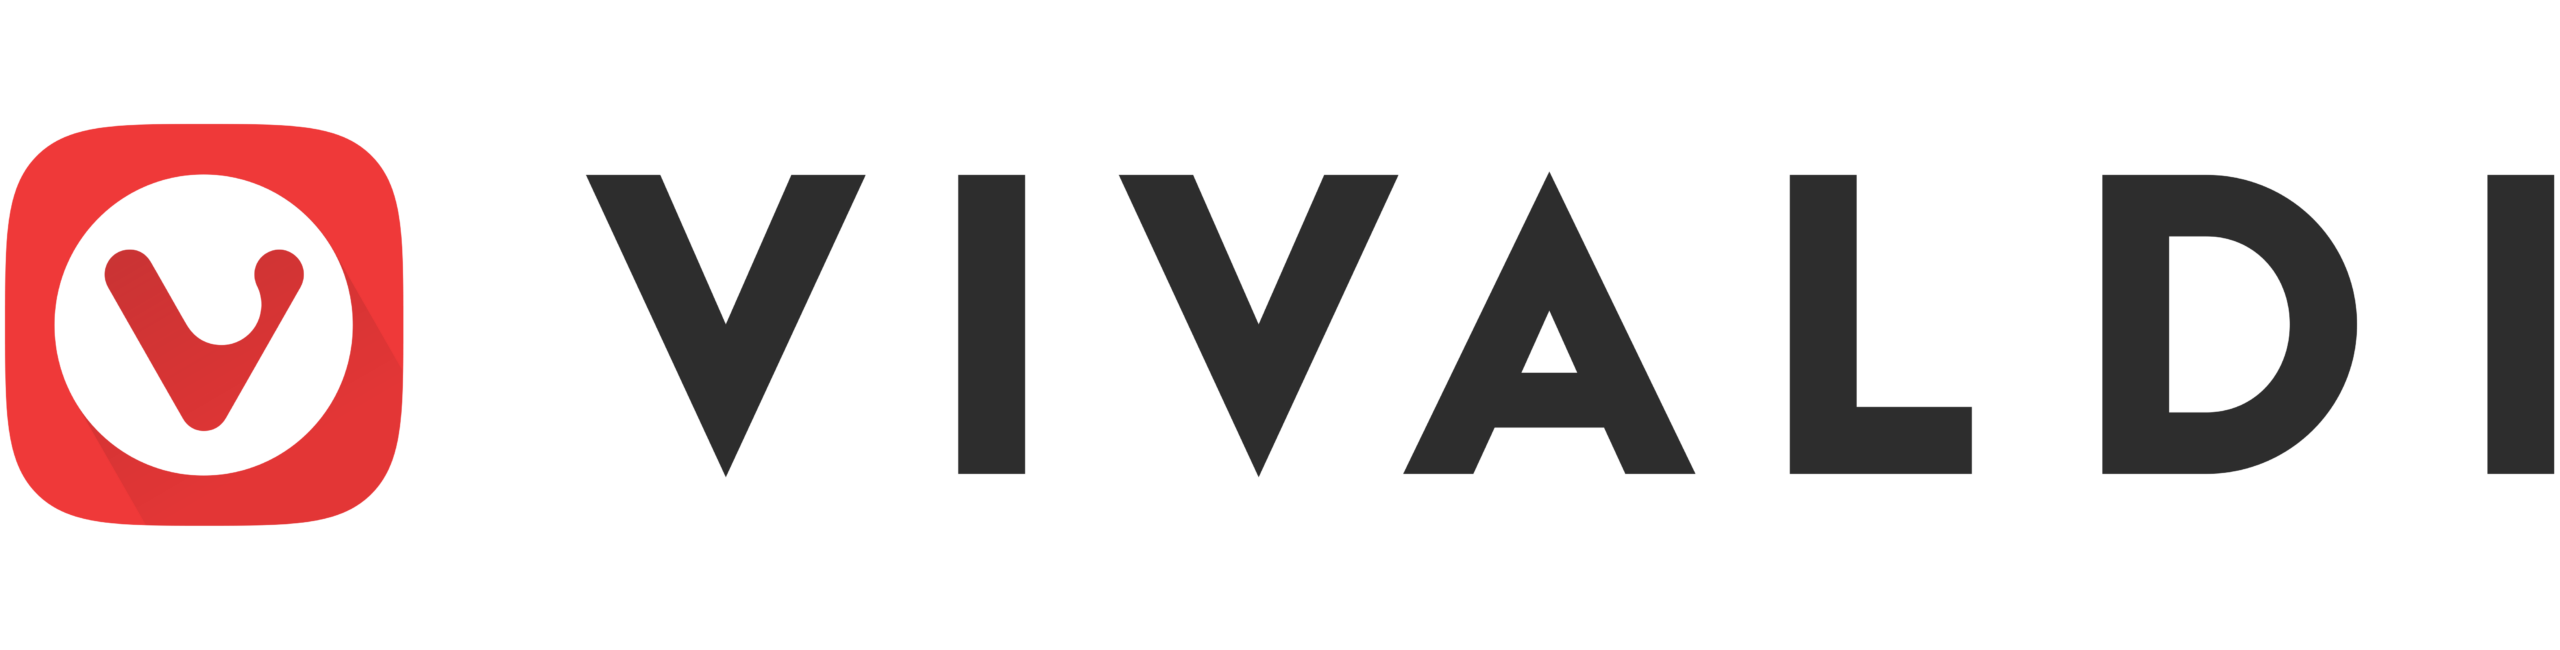 Vivaldi Logosu